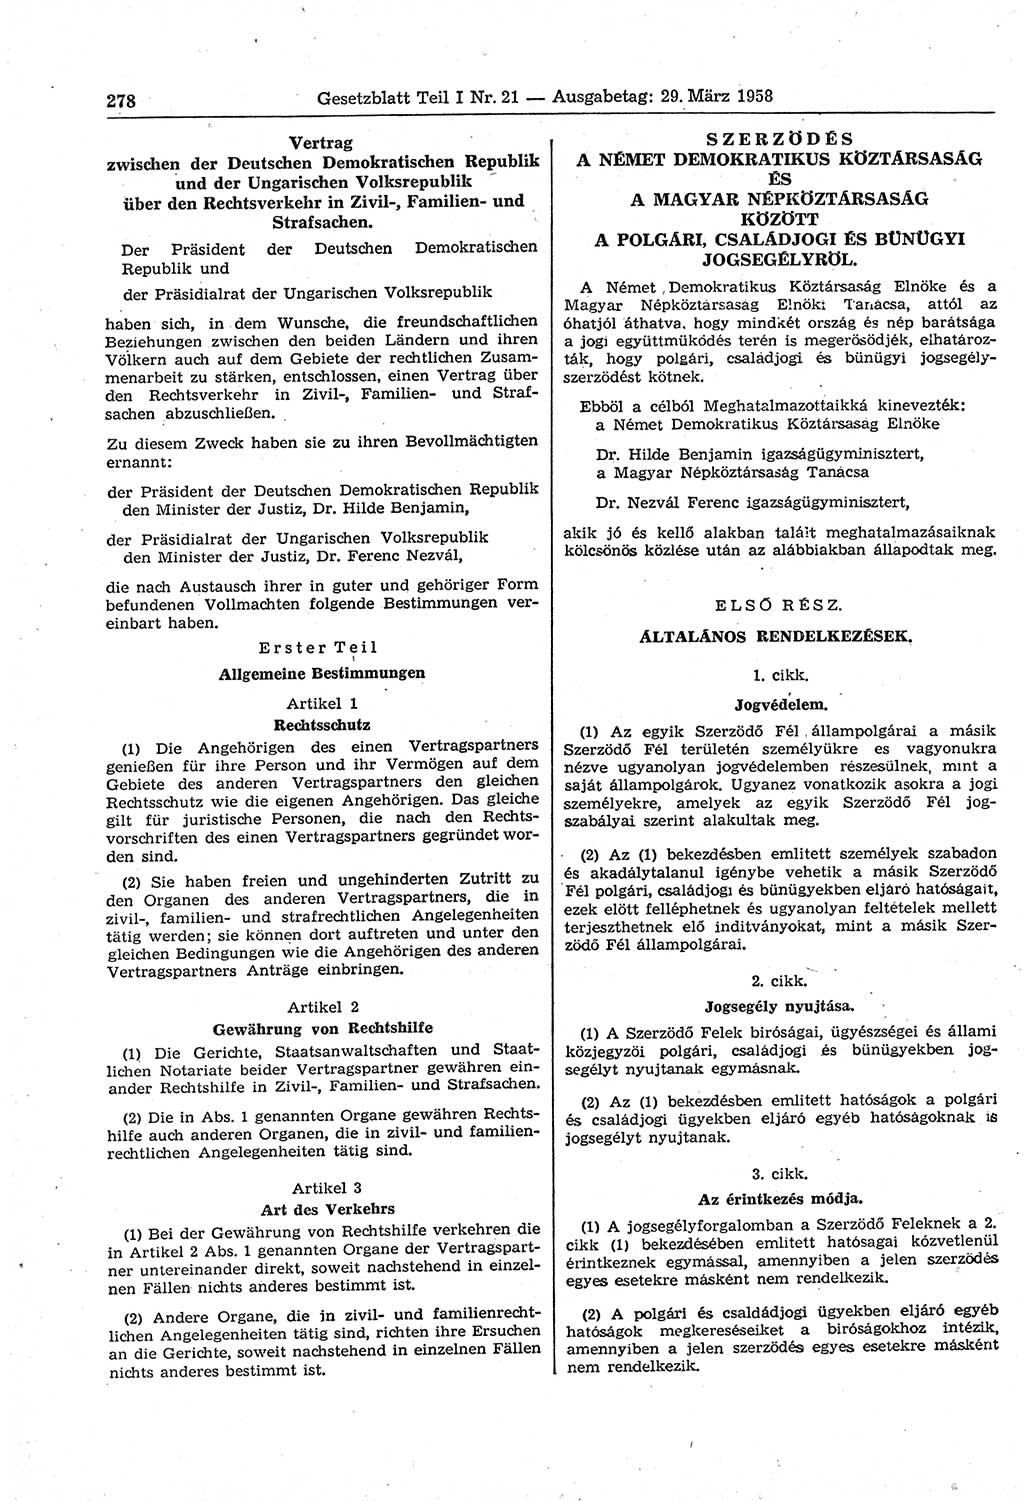 Gesetzblatt (GBl.) der Deutschen Demokratischen Republik (DDR) Teil Ⅰ 1958, Seite 278 (GBl. DDR Ⅰ 1958, S. 278)